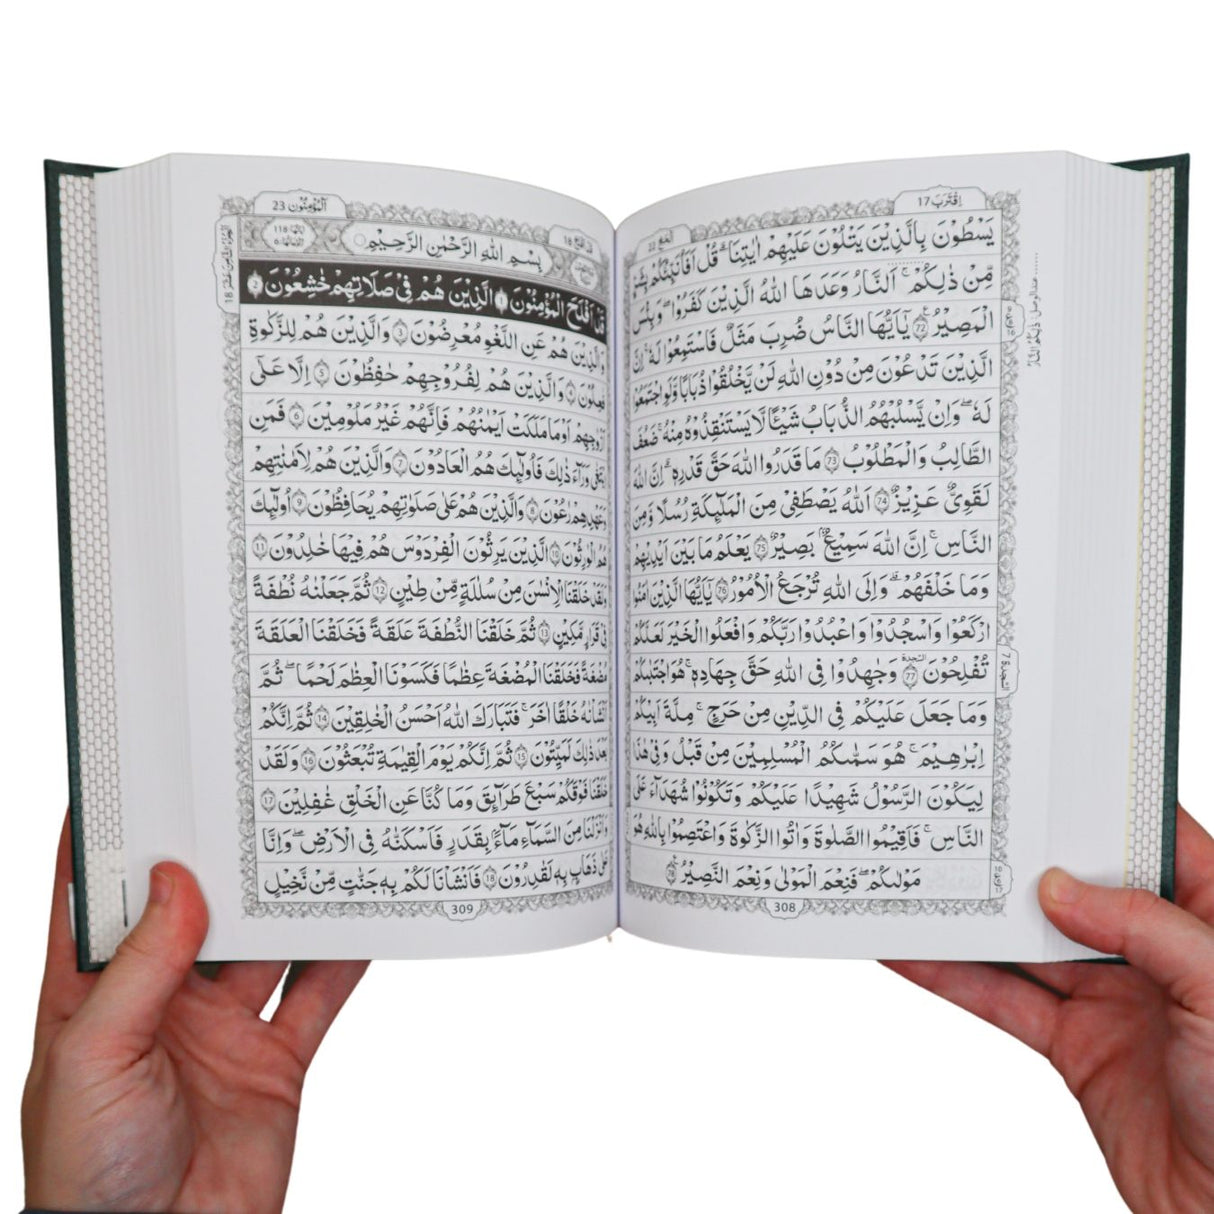 Al Quran ( A5 20 x 14cm x 3 cm )16 Lines Darussalam ( Indo Pak Persian Script )